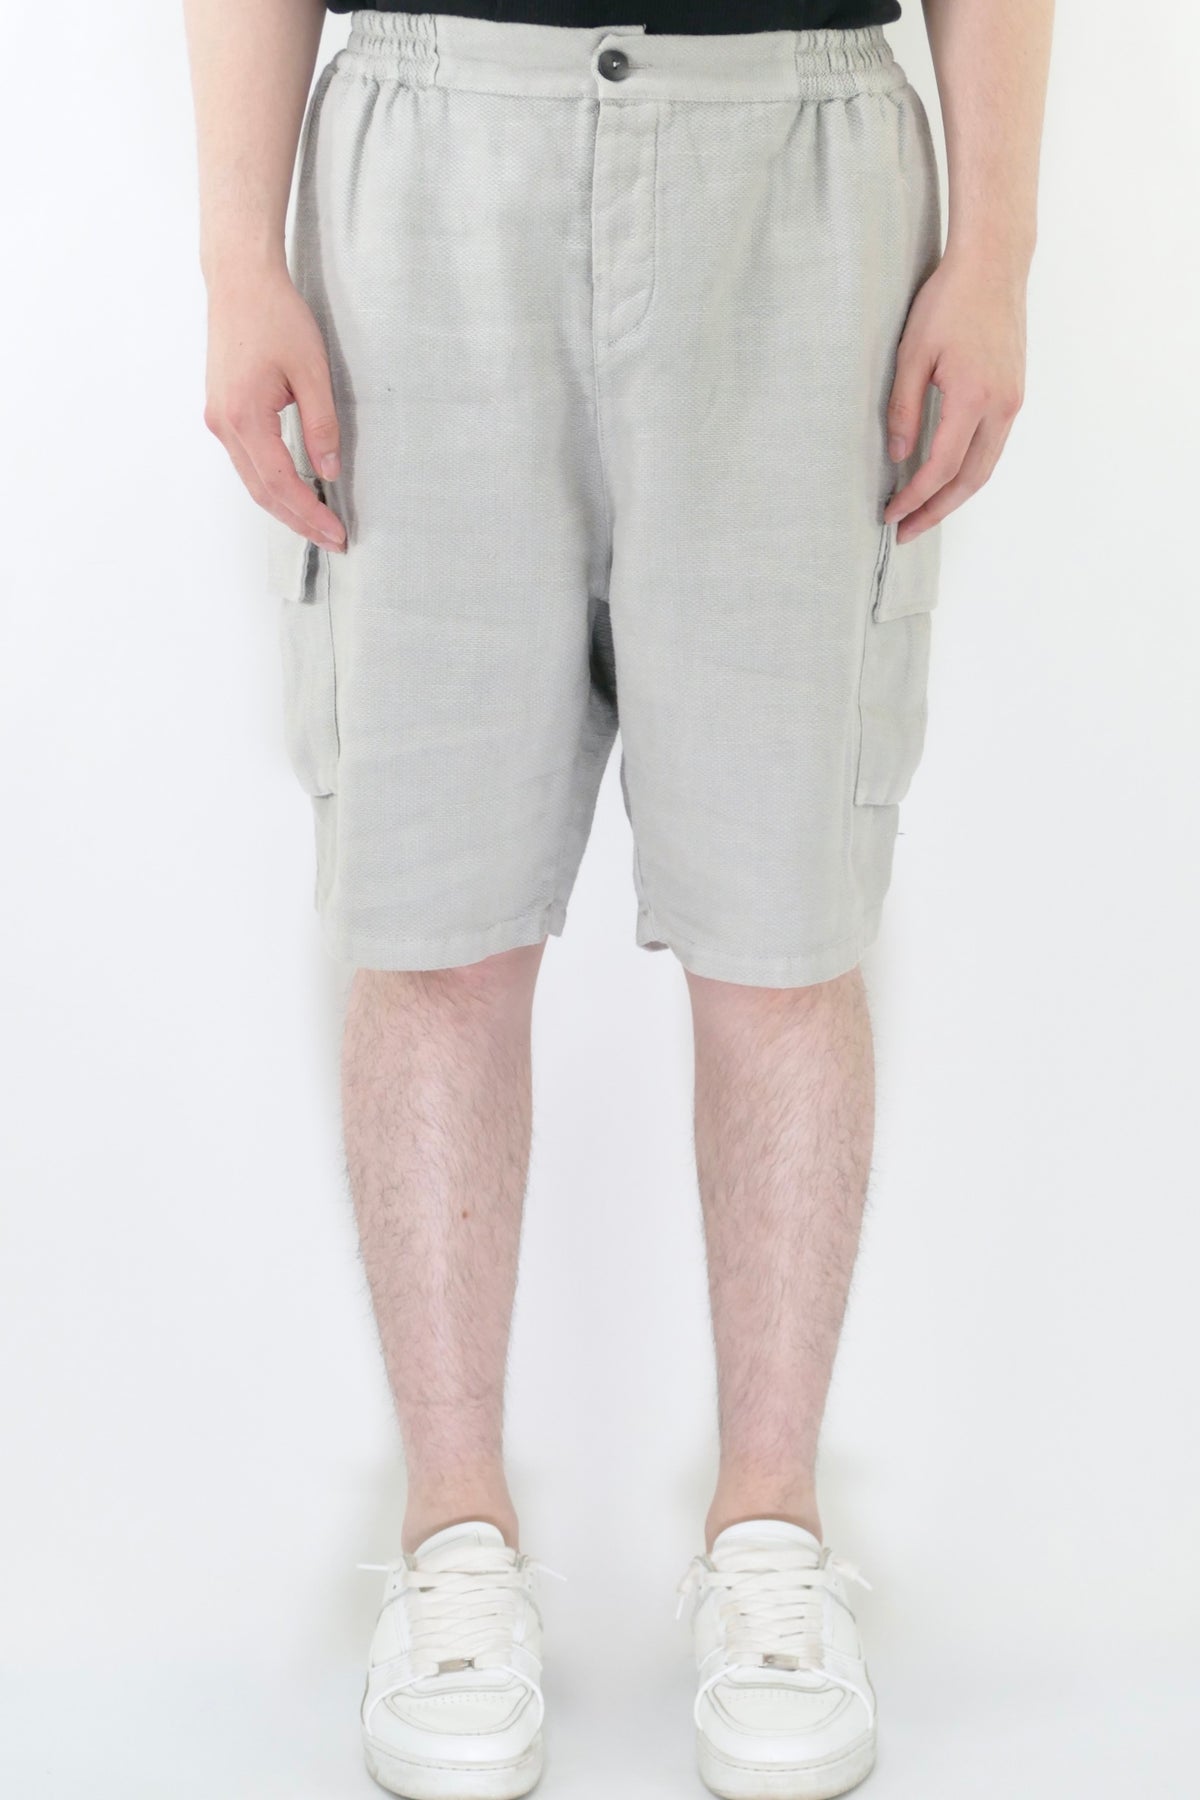 Athoa Bermuda Cargo Shorts - Grey